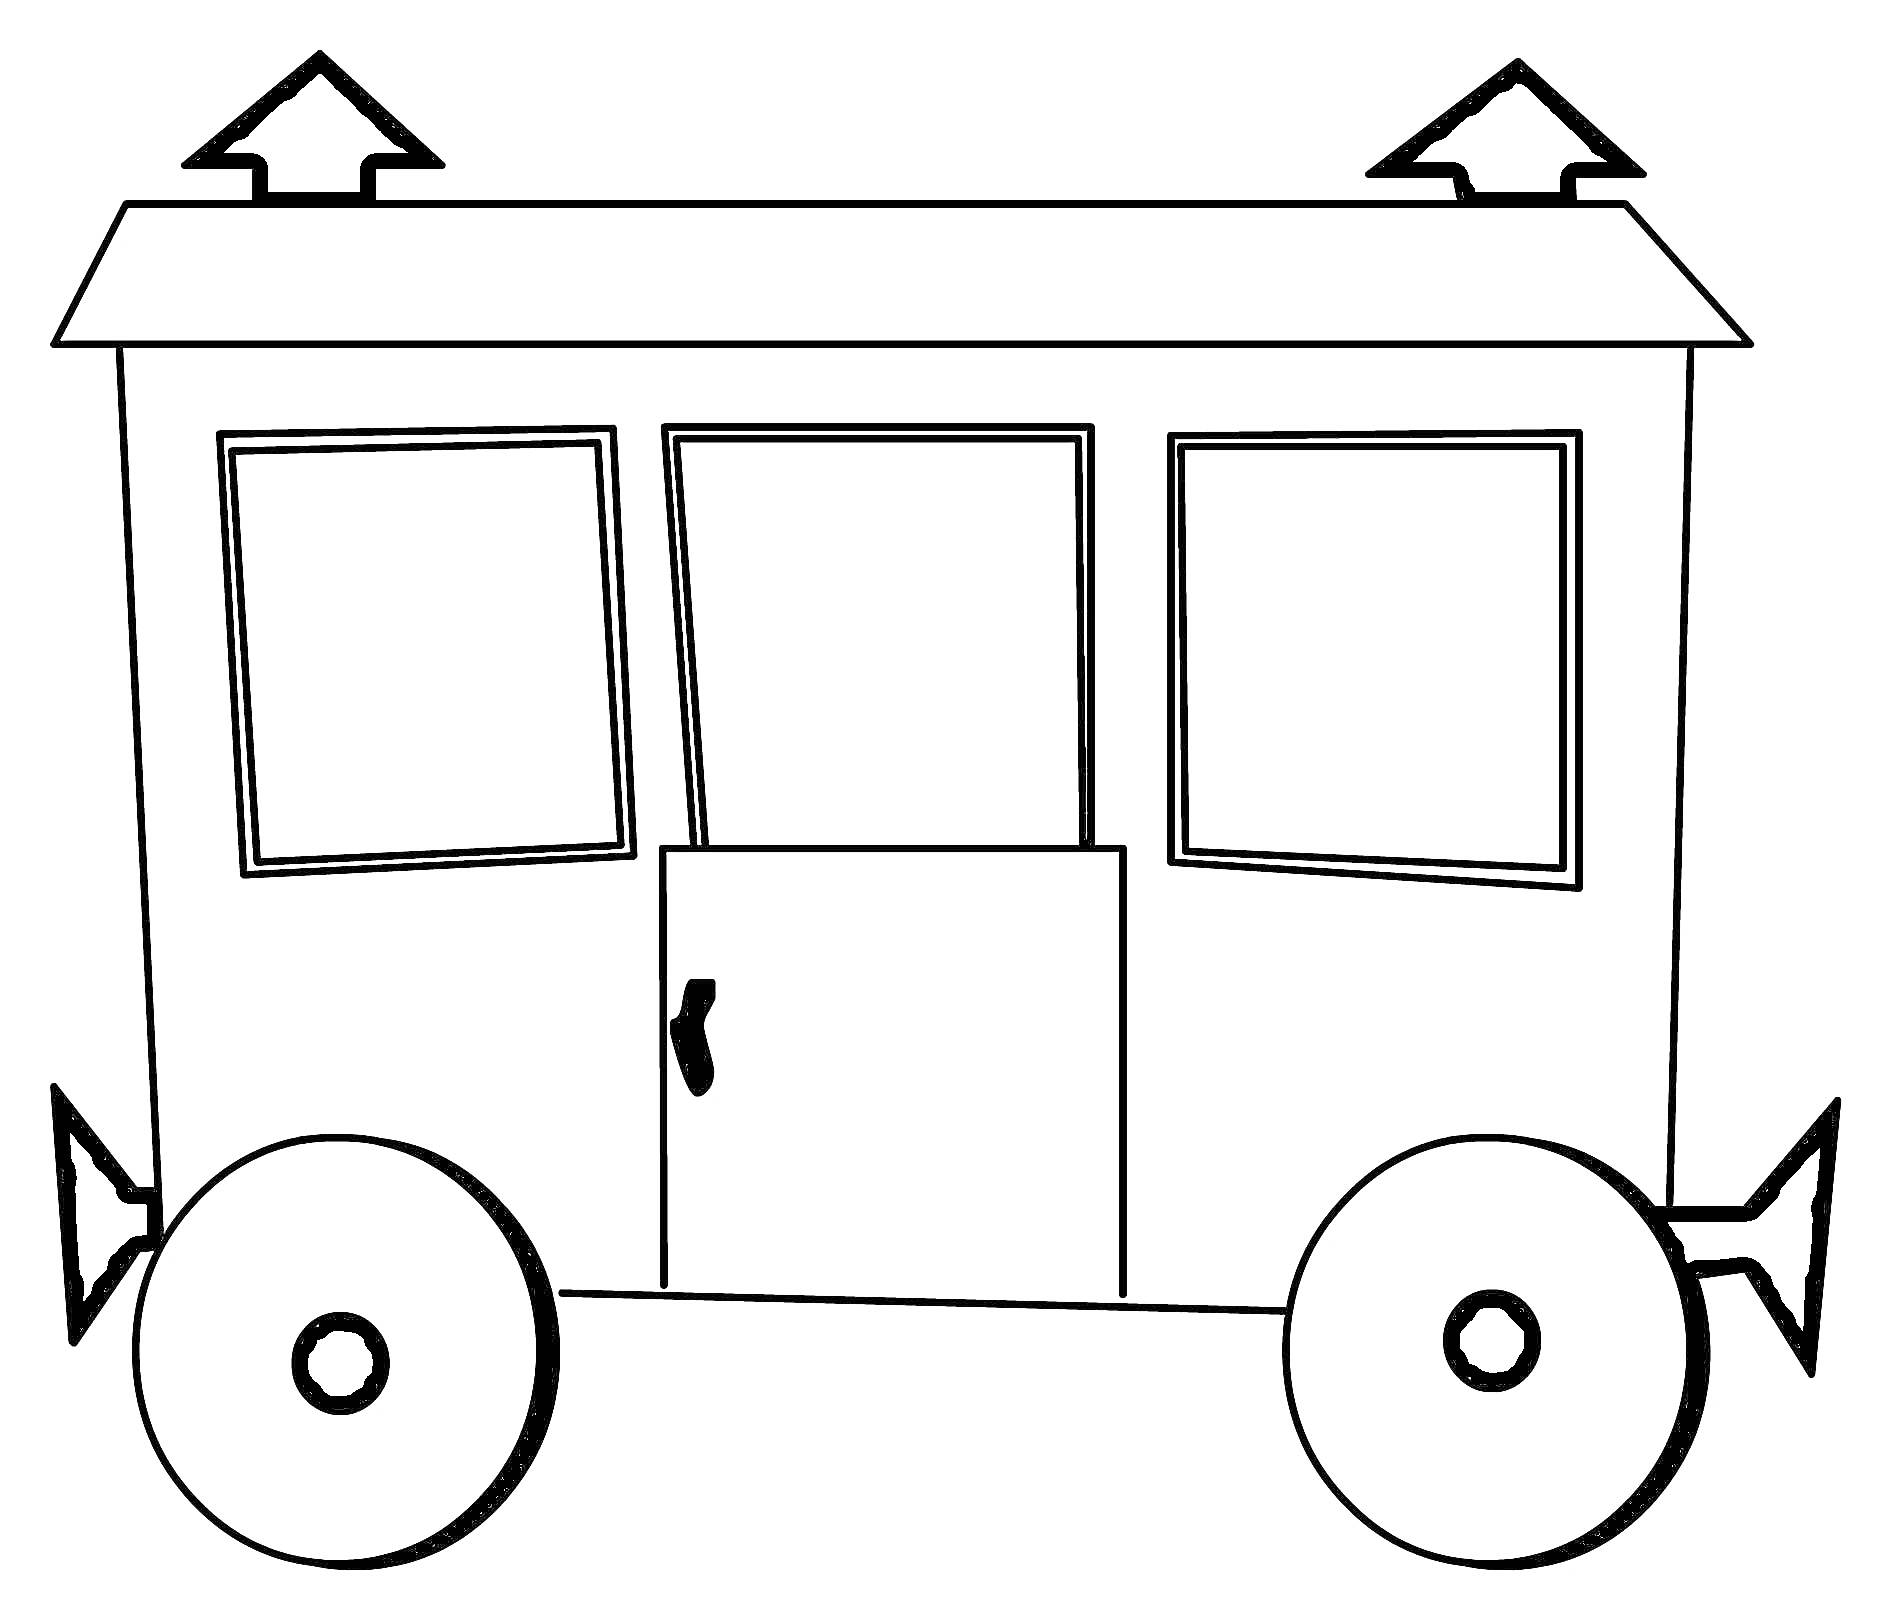 Вагончик с двумя окнами, дверью и четырьмя стрелками на крыше и колесах